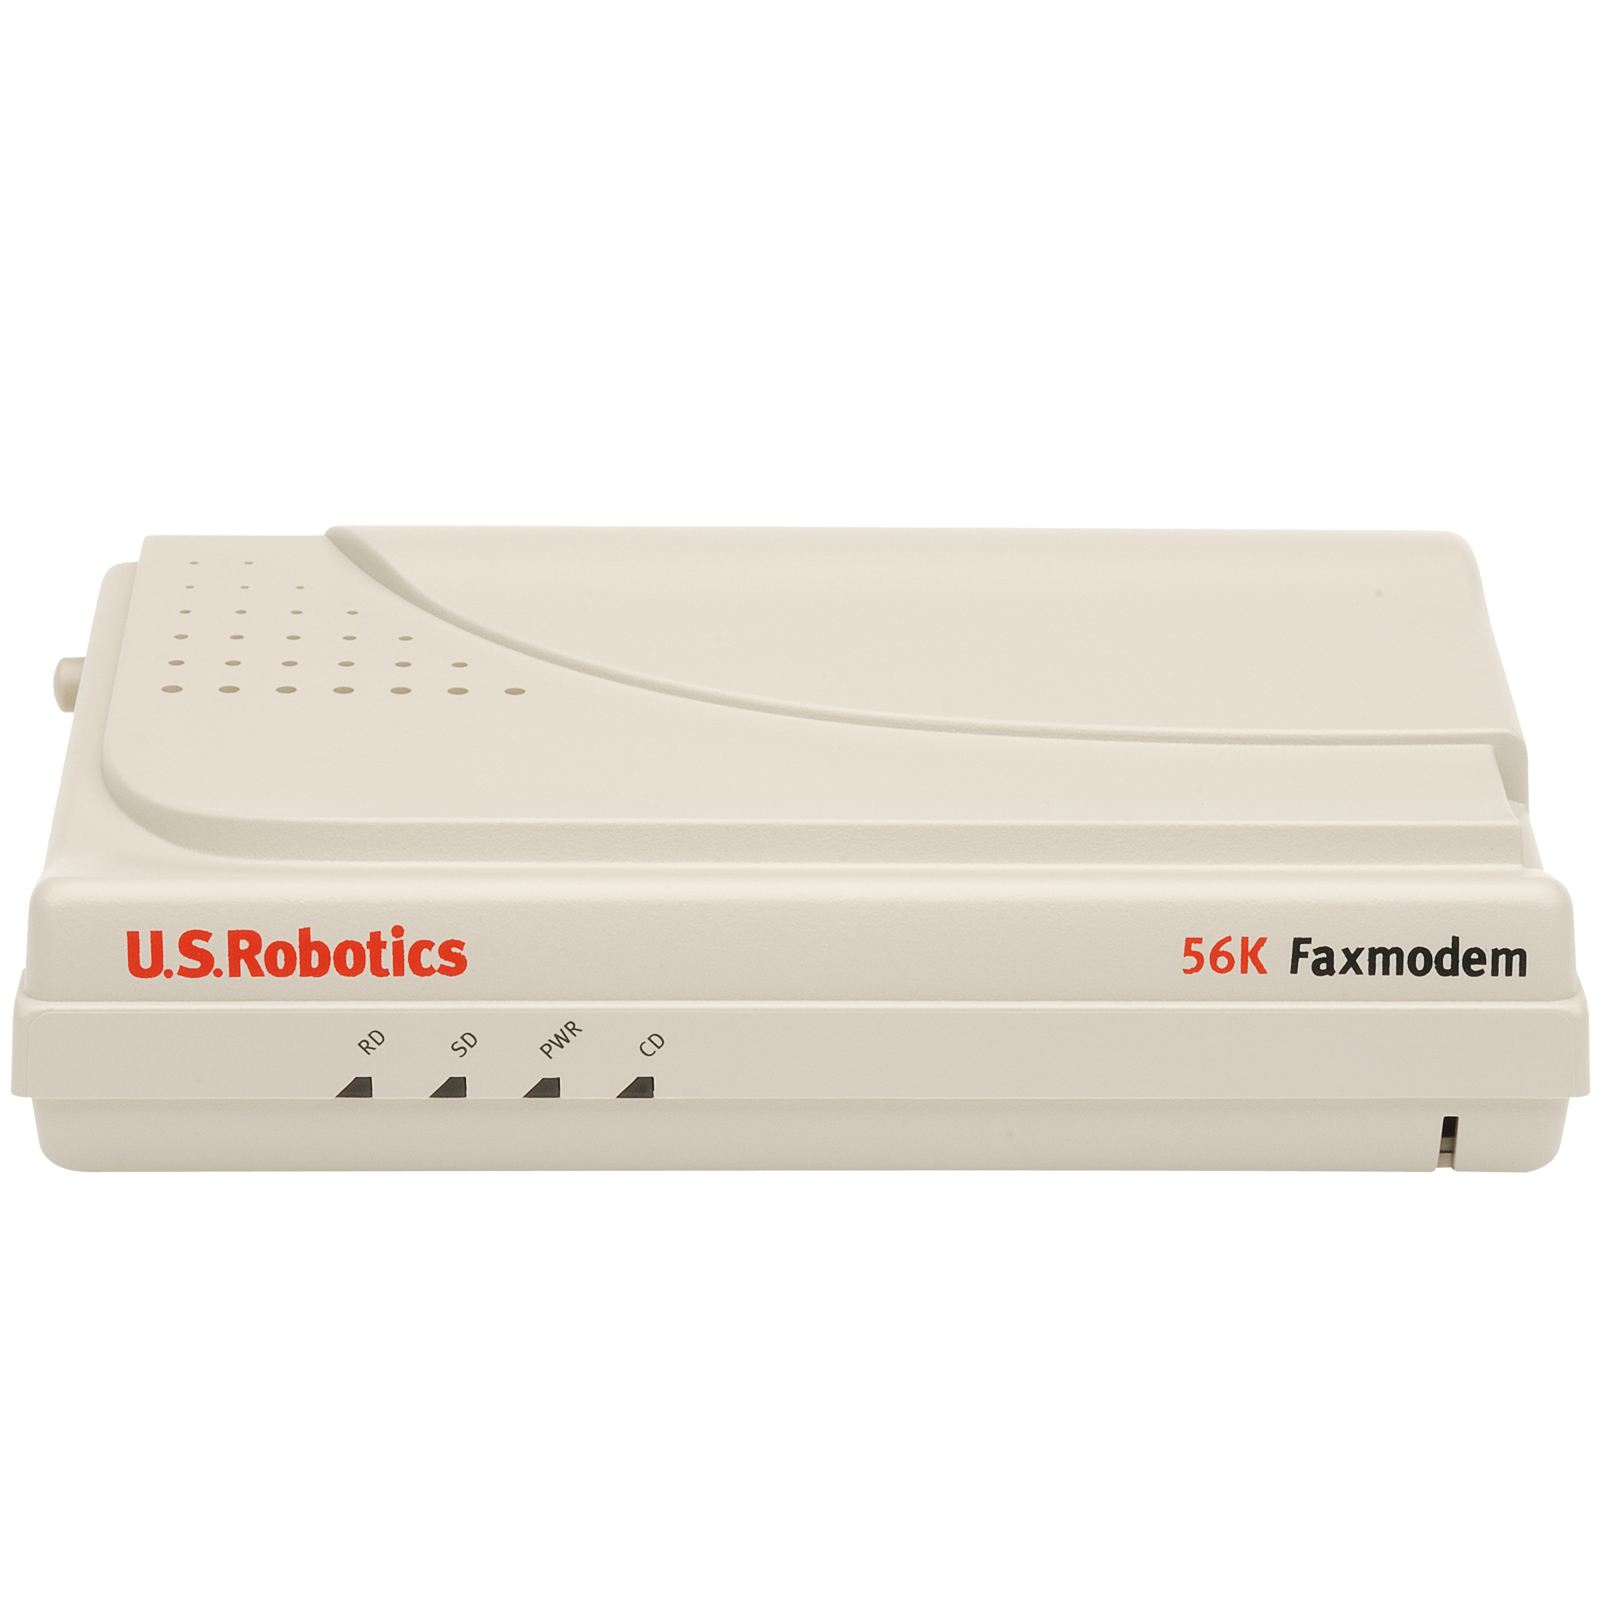 Přenos dat v komunikacích pro integrovanou výuku VUT a VŠB-TUO 63 Obrázek 10.2: Analogový modem US Robotics 5630 může být minicom, nebo C-Kermit. Základní příkaz je AT, kdy modem odpoví OK.